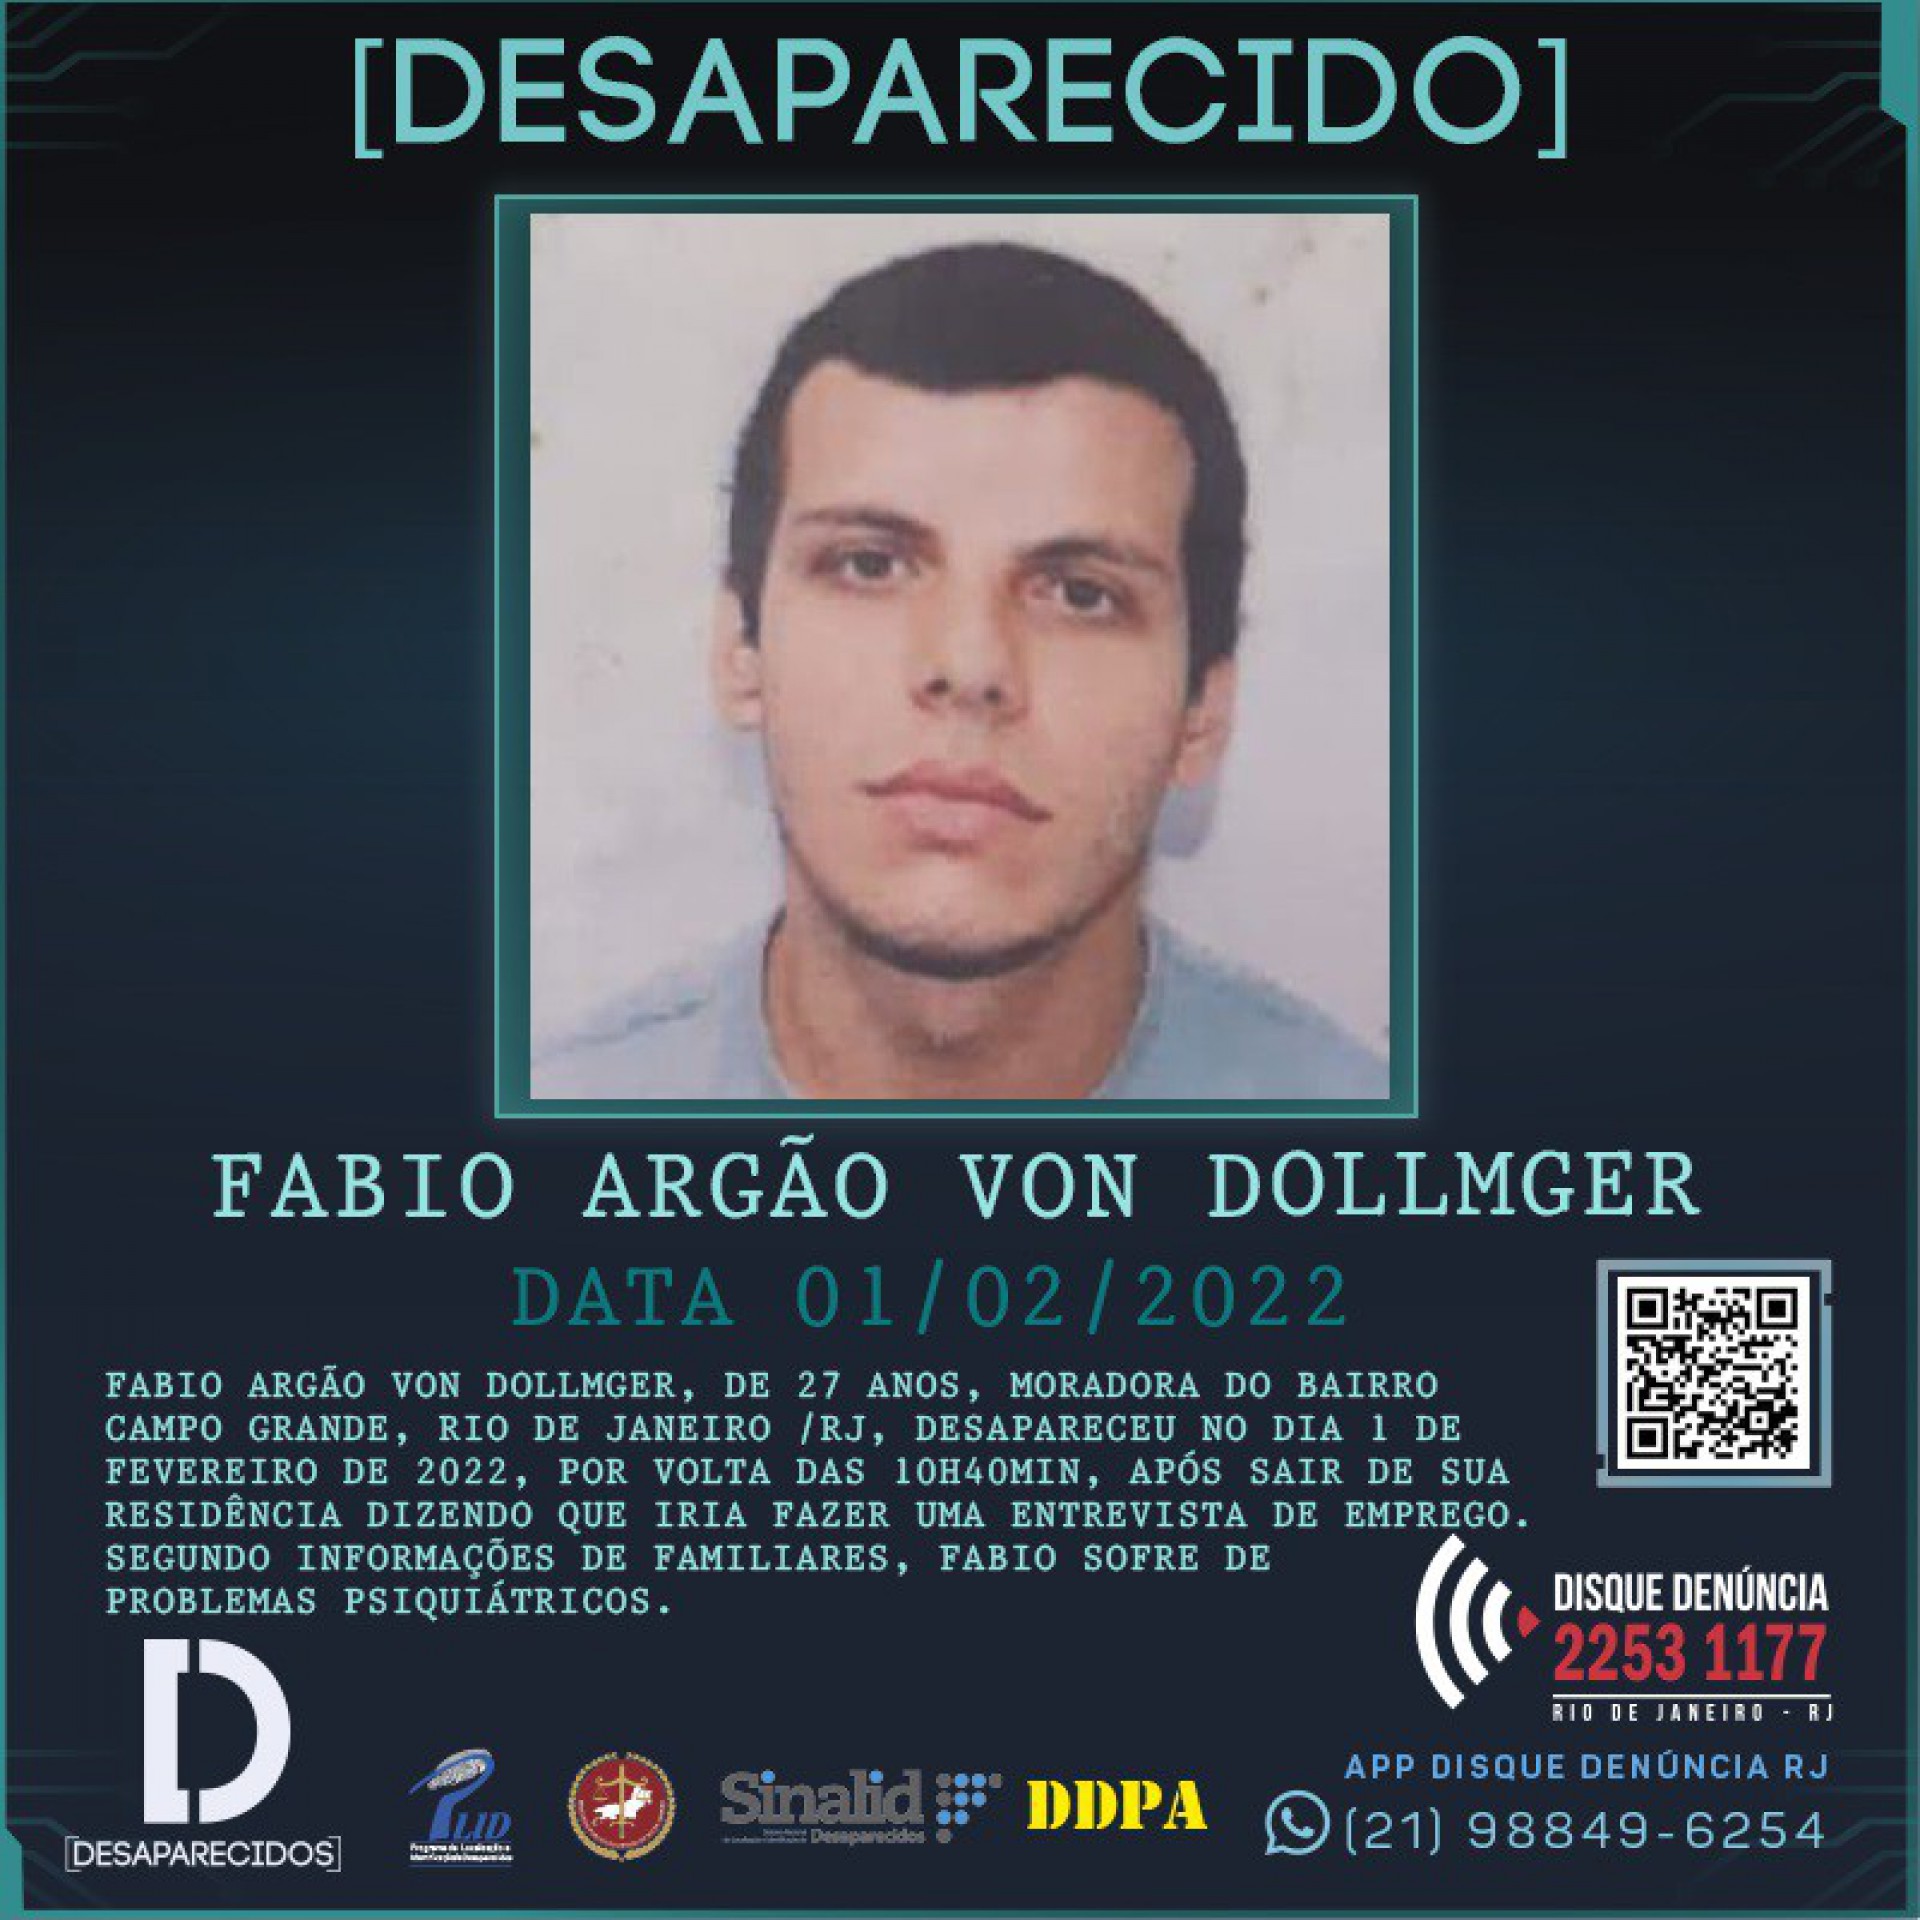  Disque Denúncia divulgou o cartaz de Fabio Argão Von Dollmger nesta quinta-feira (10)  - Divulgação